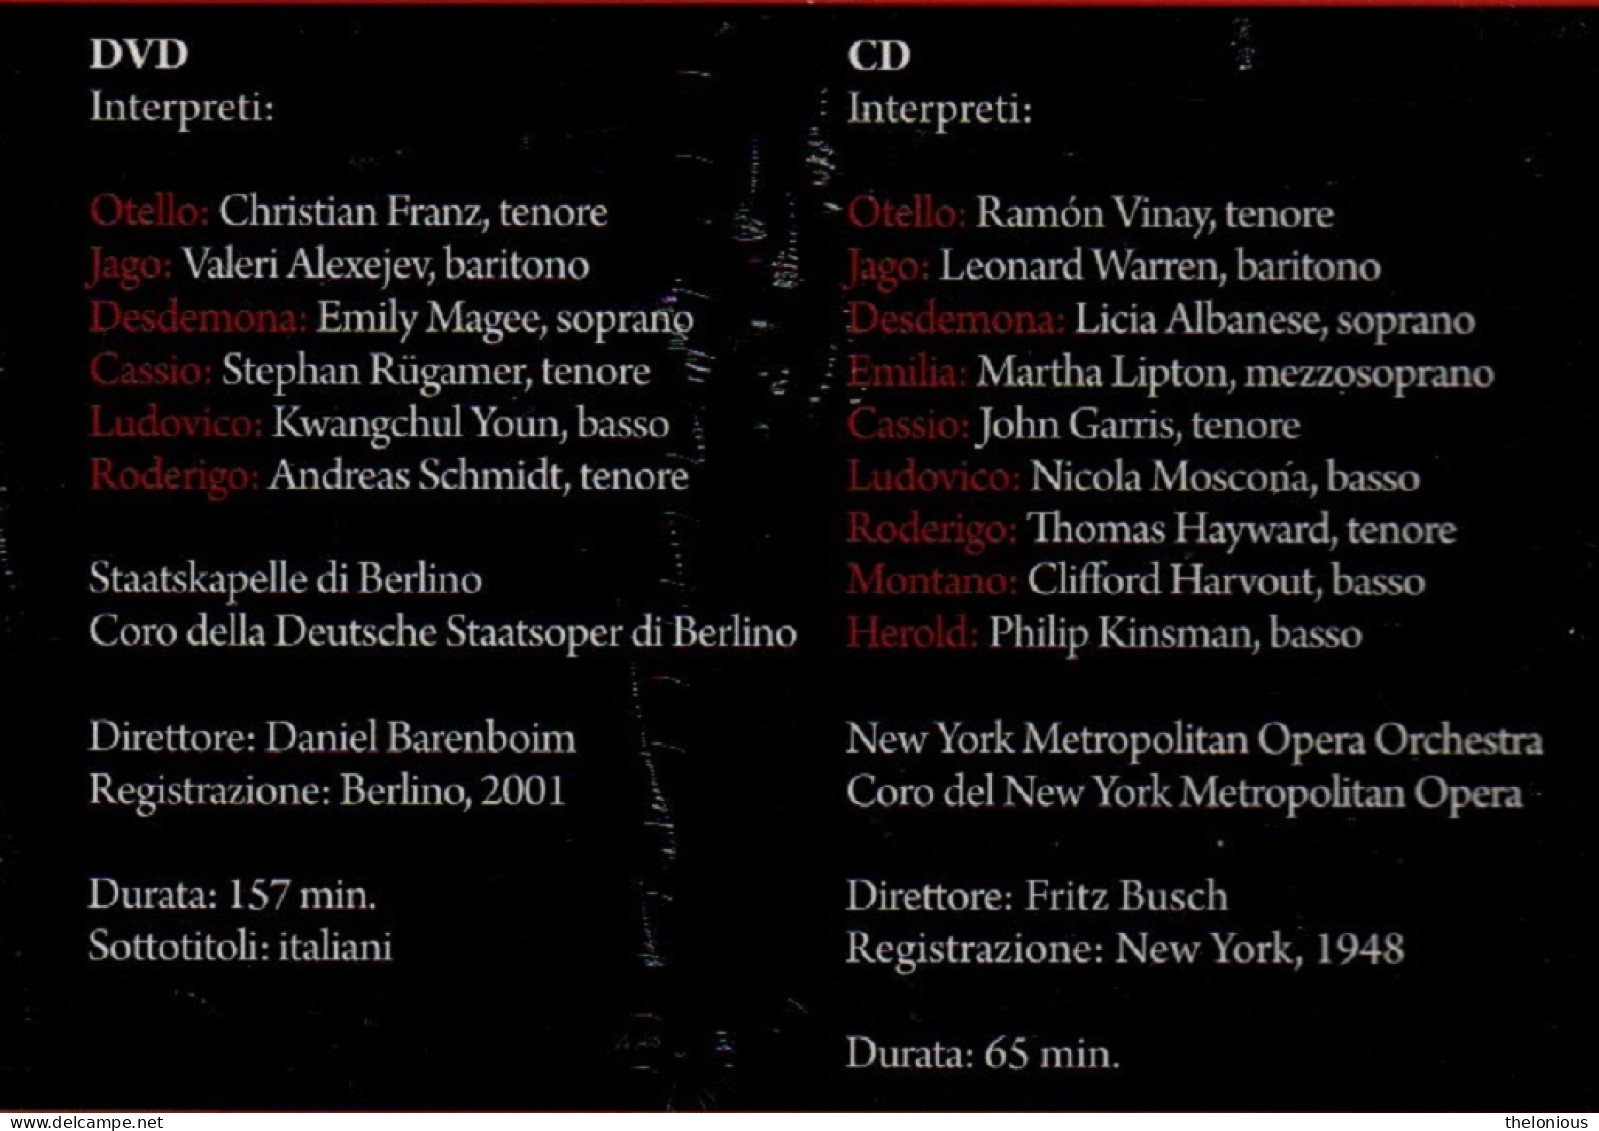 * DVD / CD La Grande Lirica - G. Verdi - Otello - Nuovo Sigillato - Concerto E Musica